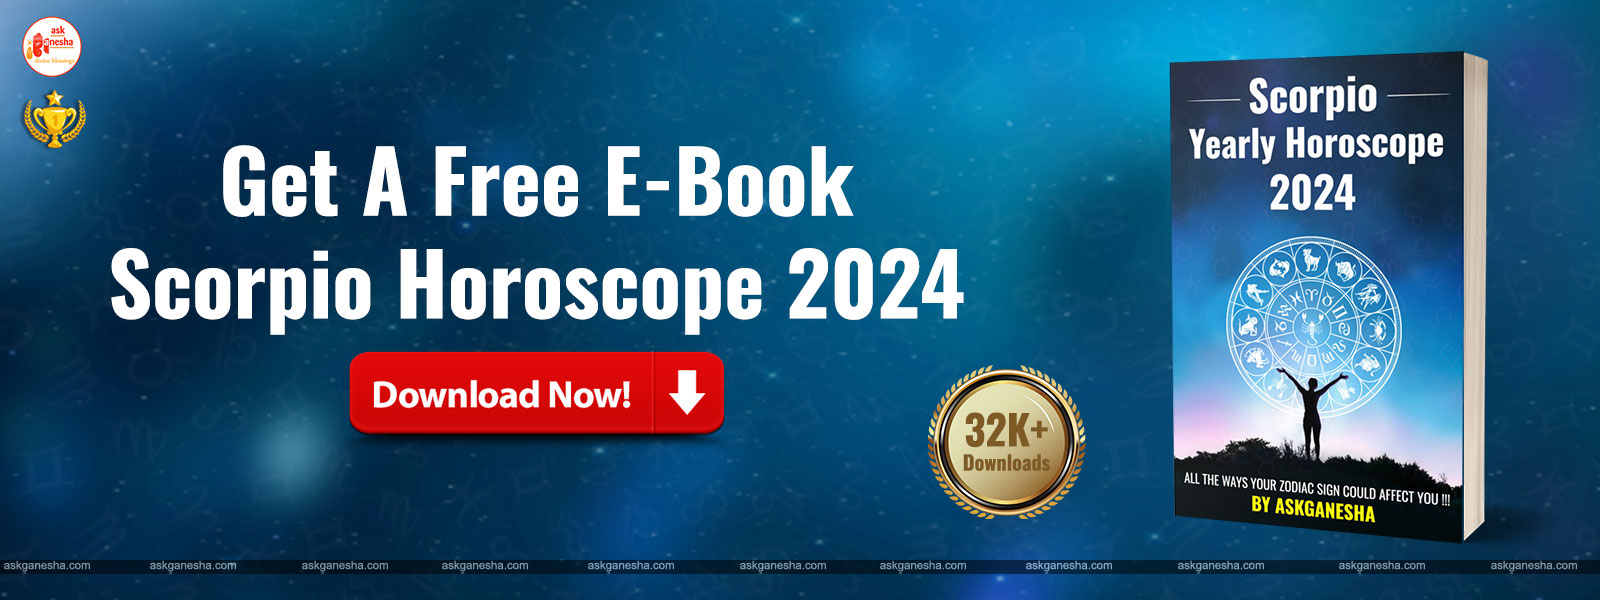 Scorpio Yearly Horoscope 2024